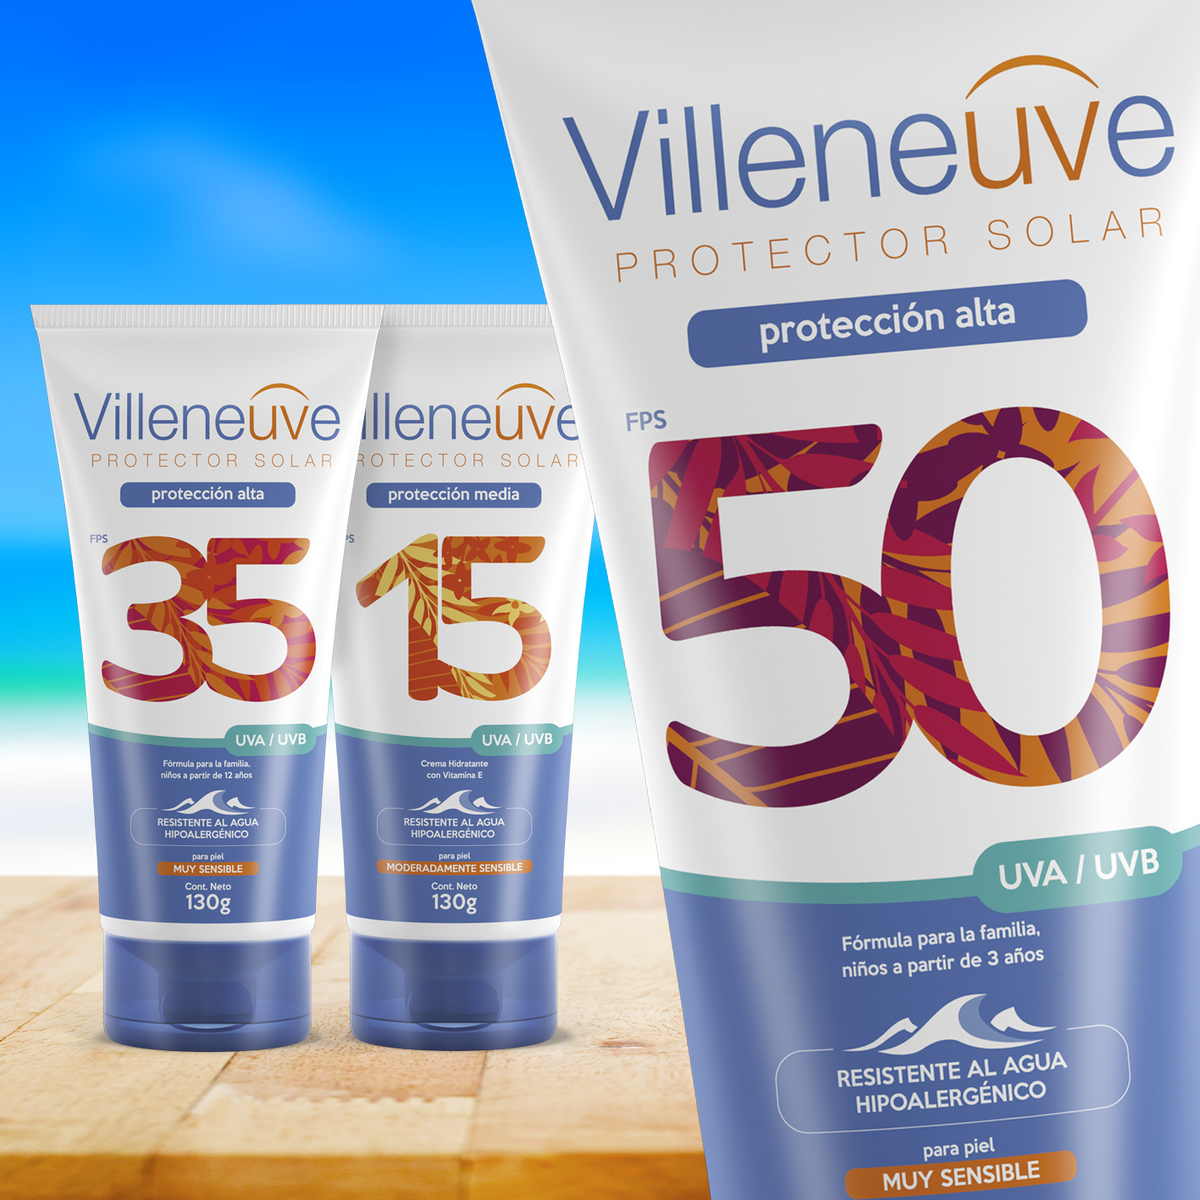 New Villeneuve Sunscreen Packaging Design